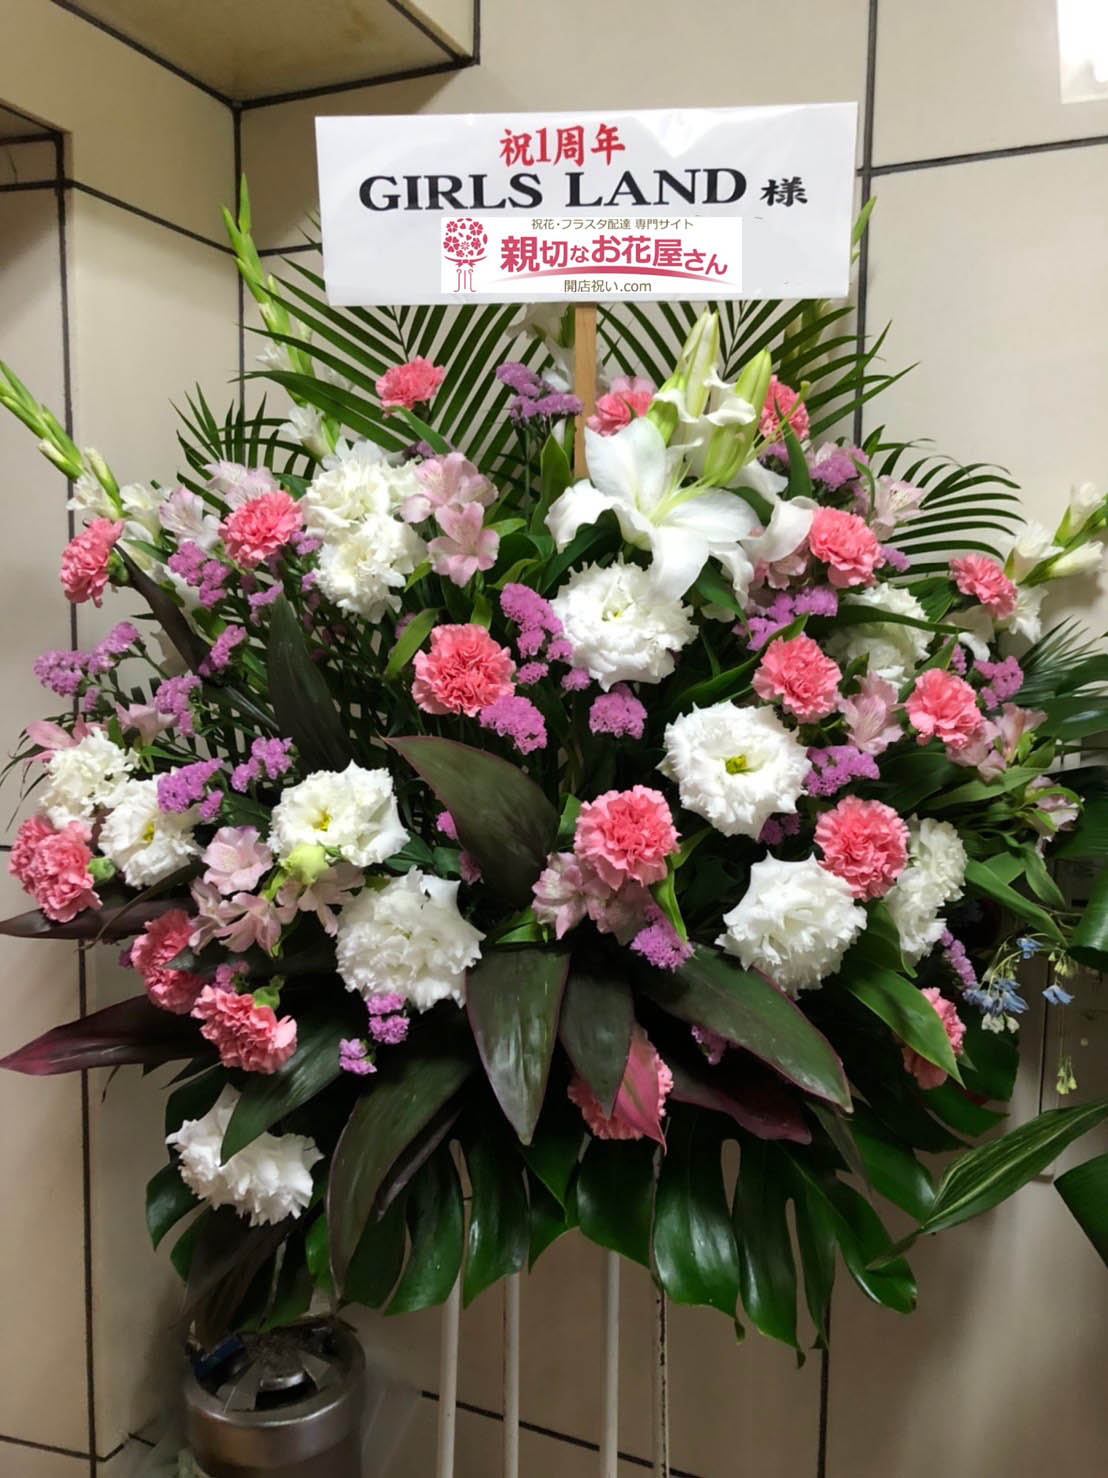 神奈川県厚木市 一周年祝い花 スタンド花 Girls Land様 親切なお花屋さん 開店祝い Com